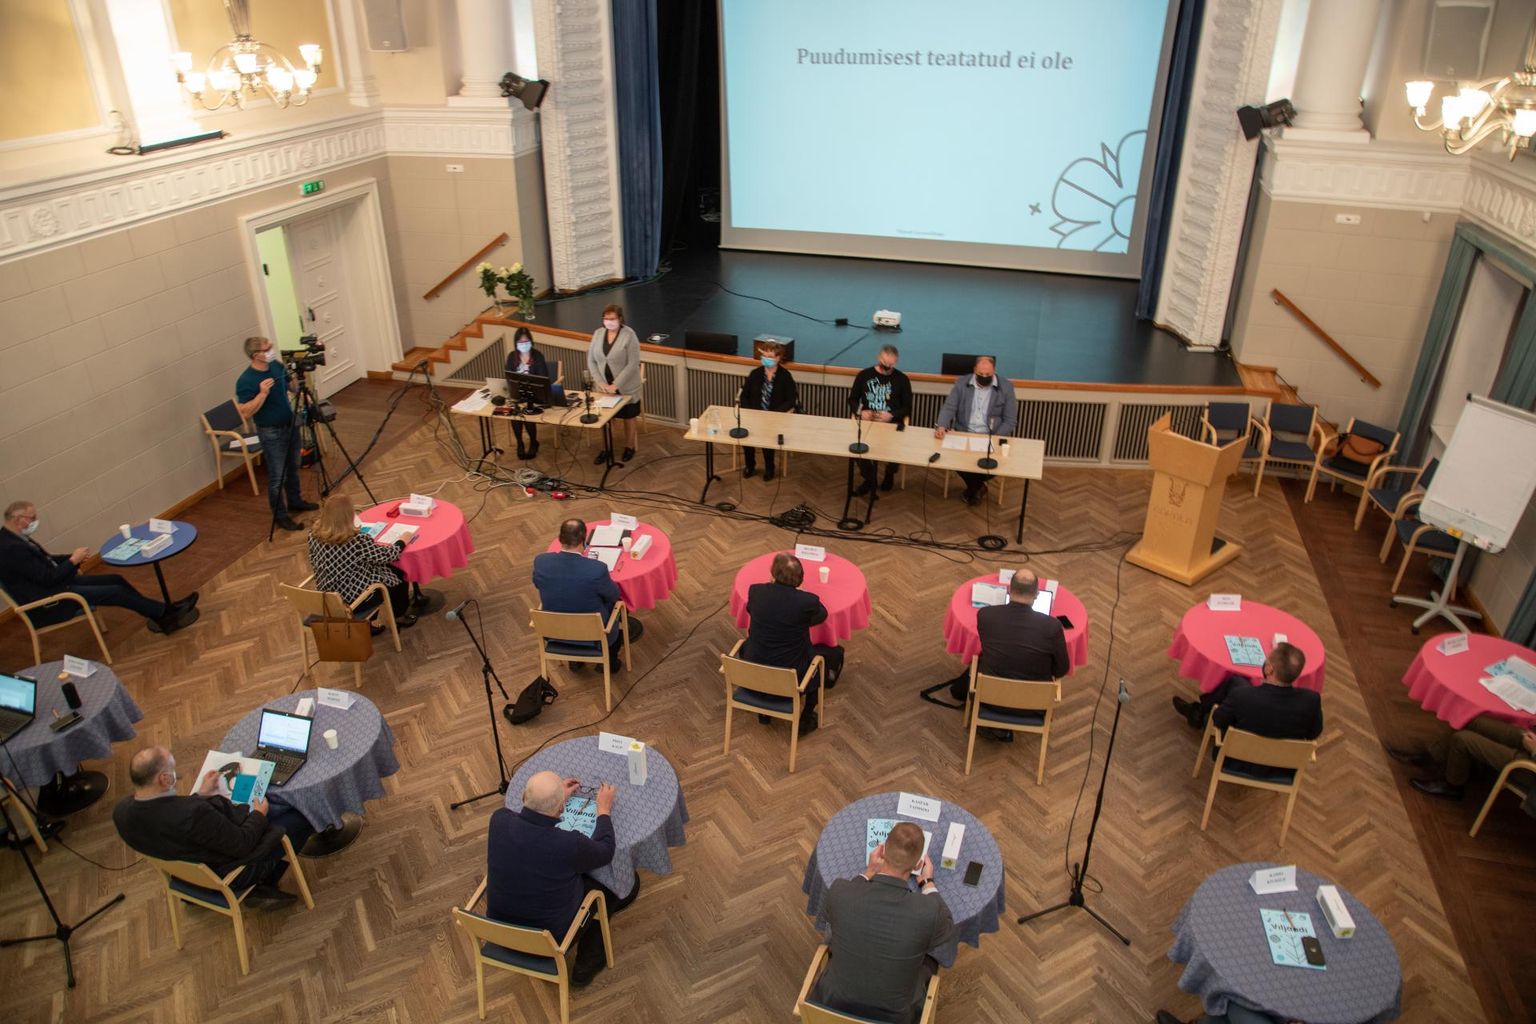 Viljandi linnavolikogu XVII koosseisu esimesel istungil valiti Helmen Kütt 17 häälega linnavolikogu esimeheks.